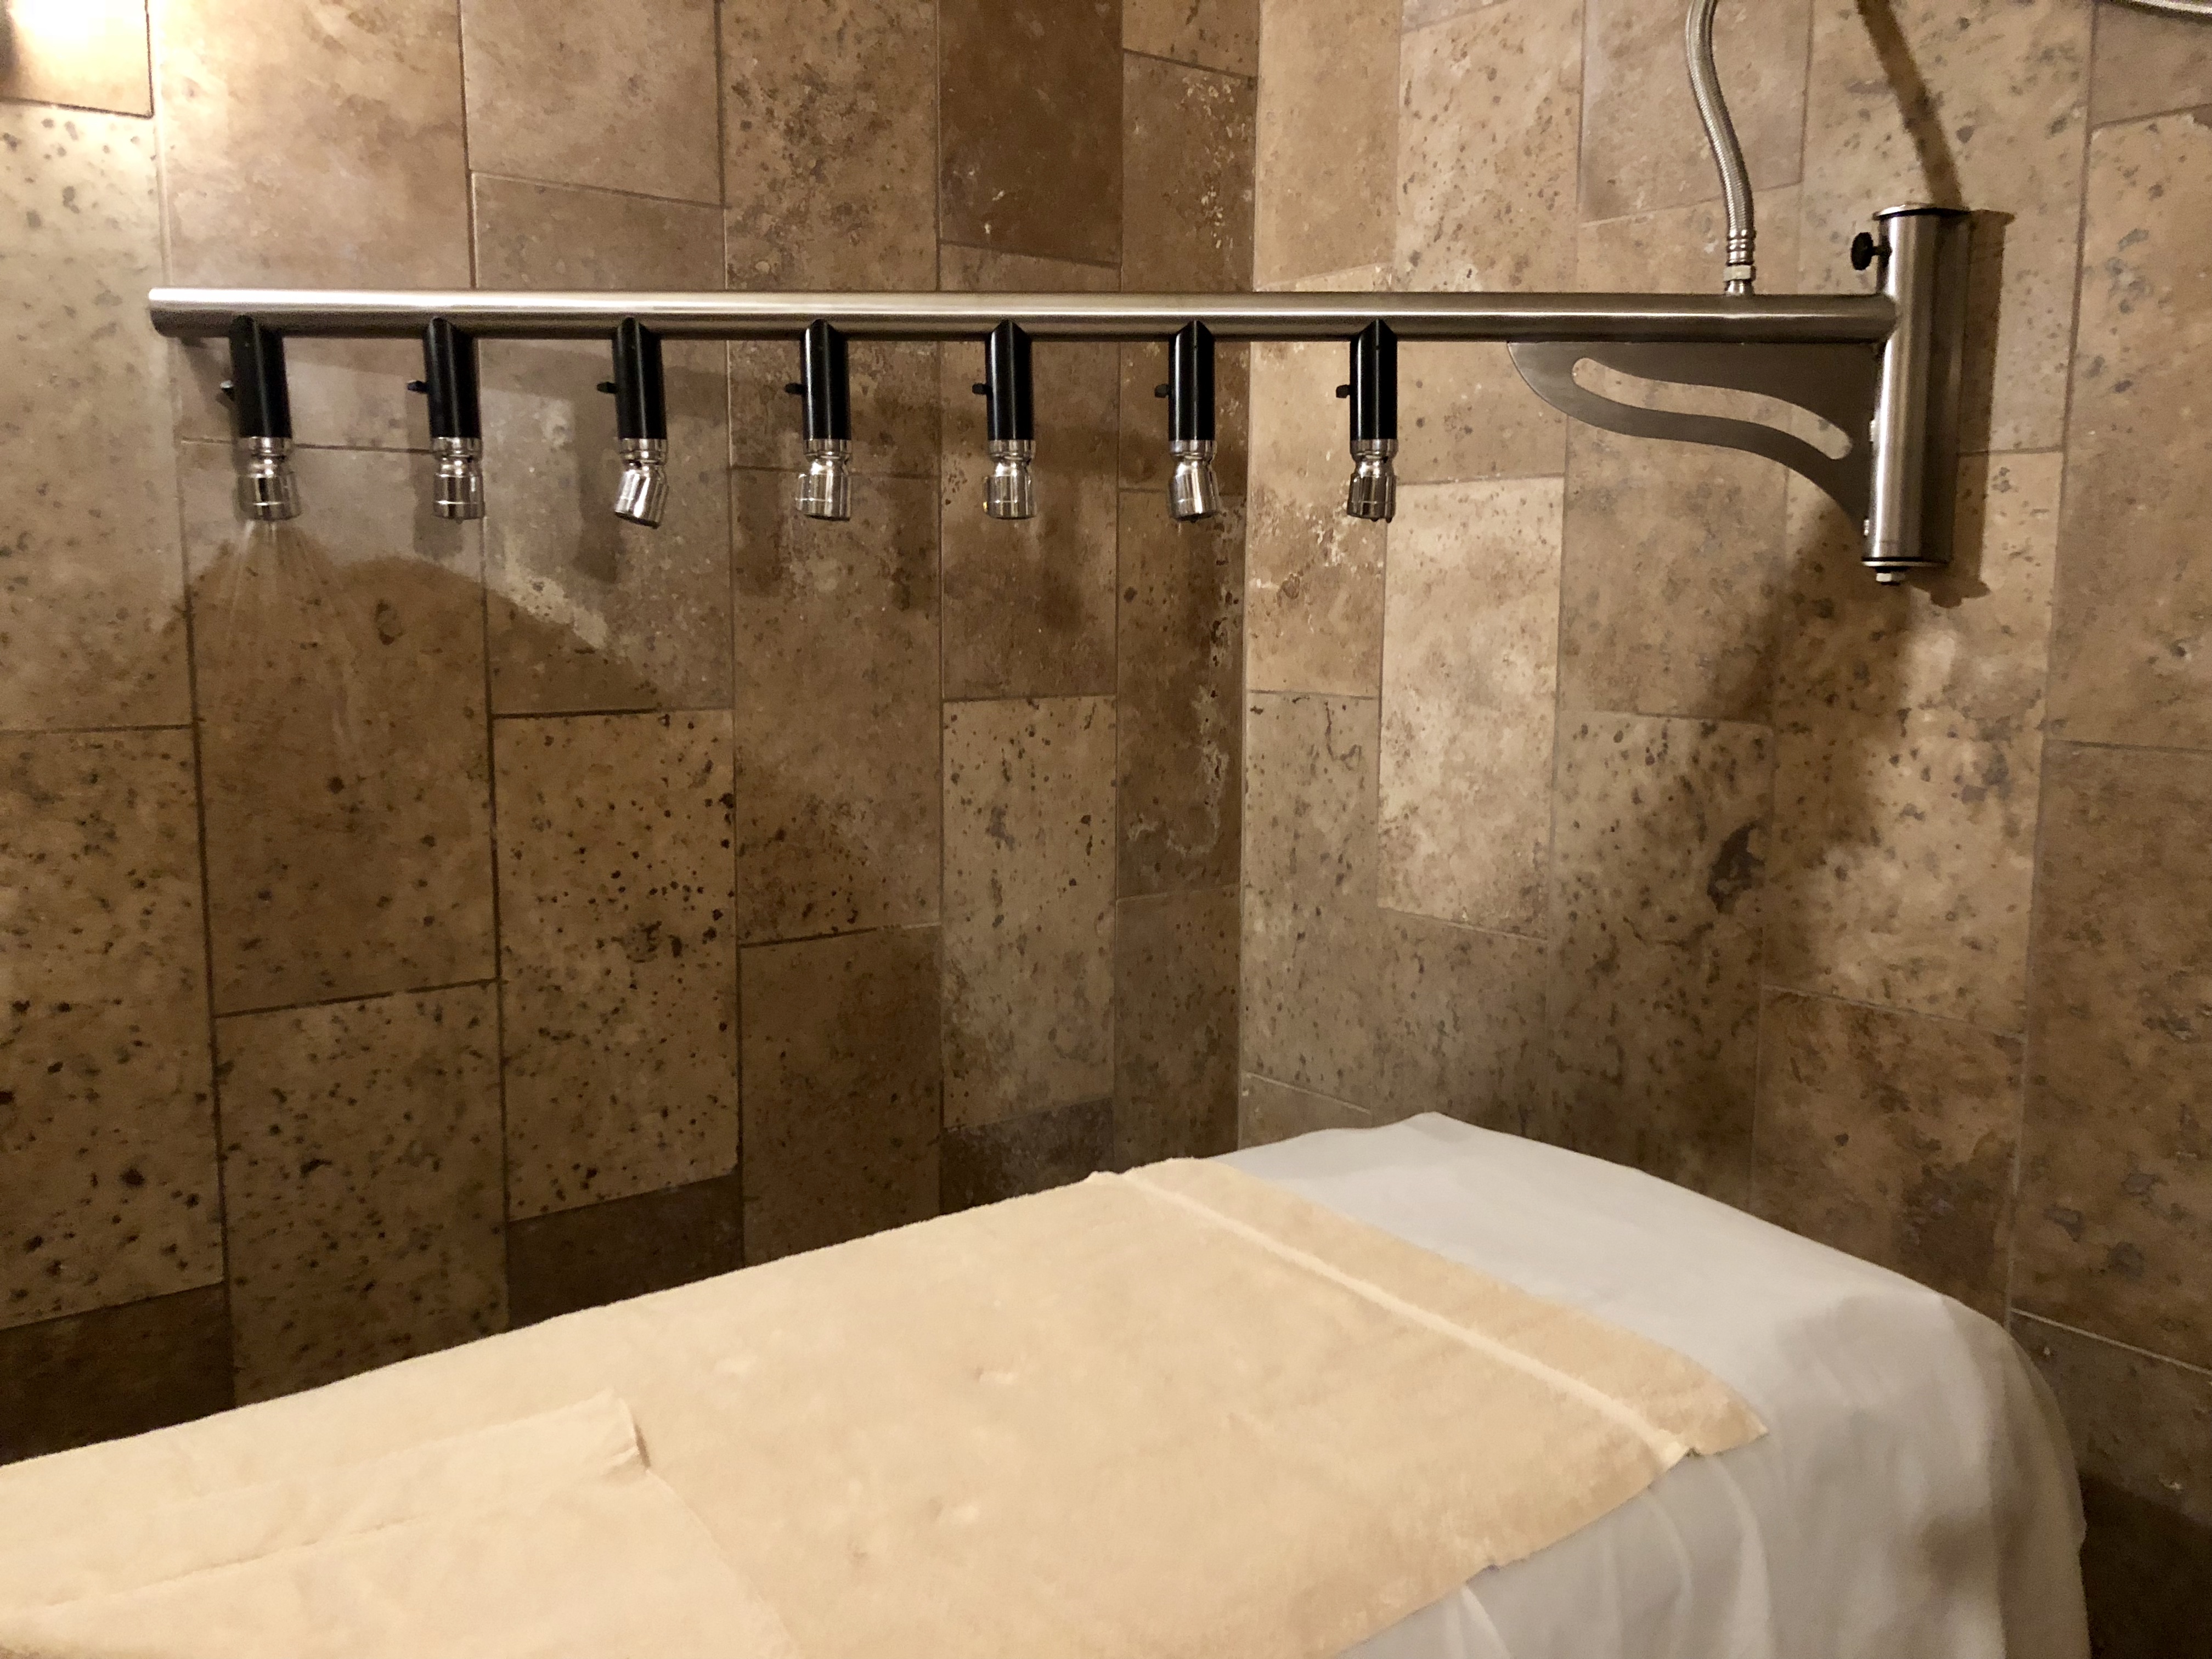 Spa at Tubac Golf Resort Vichy Shower nozzles